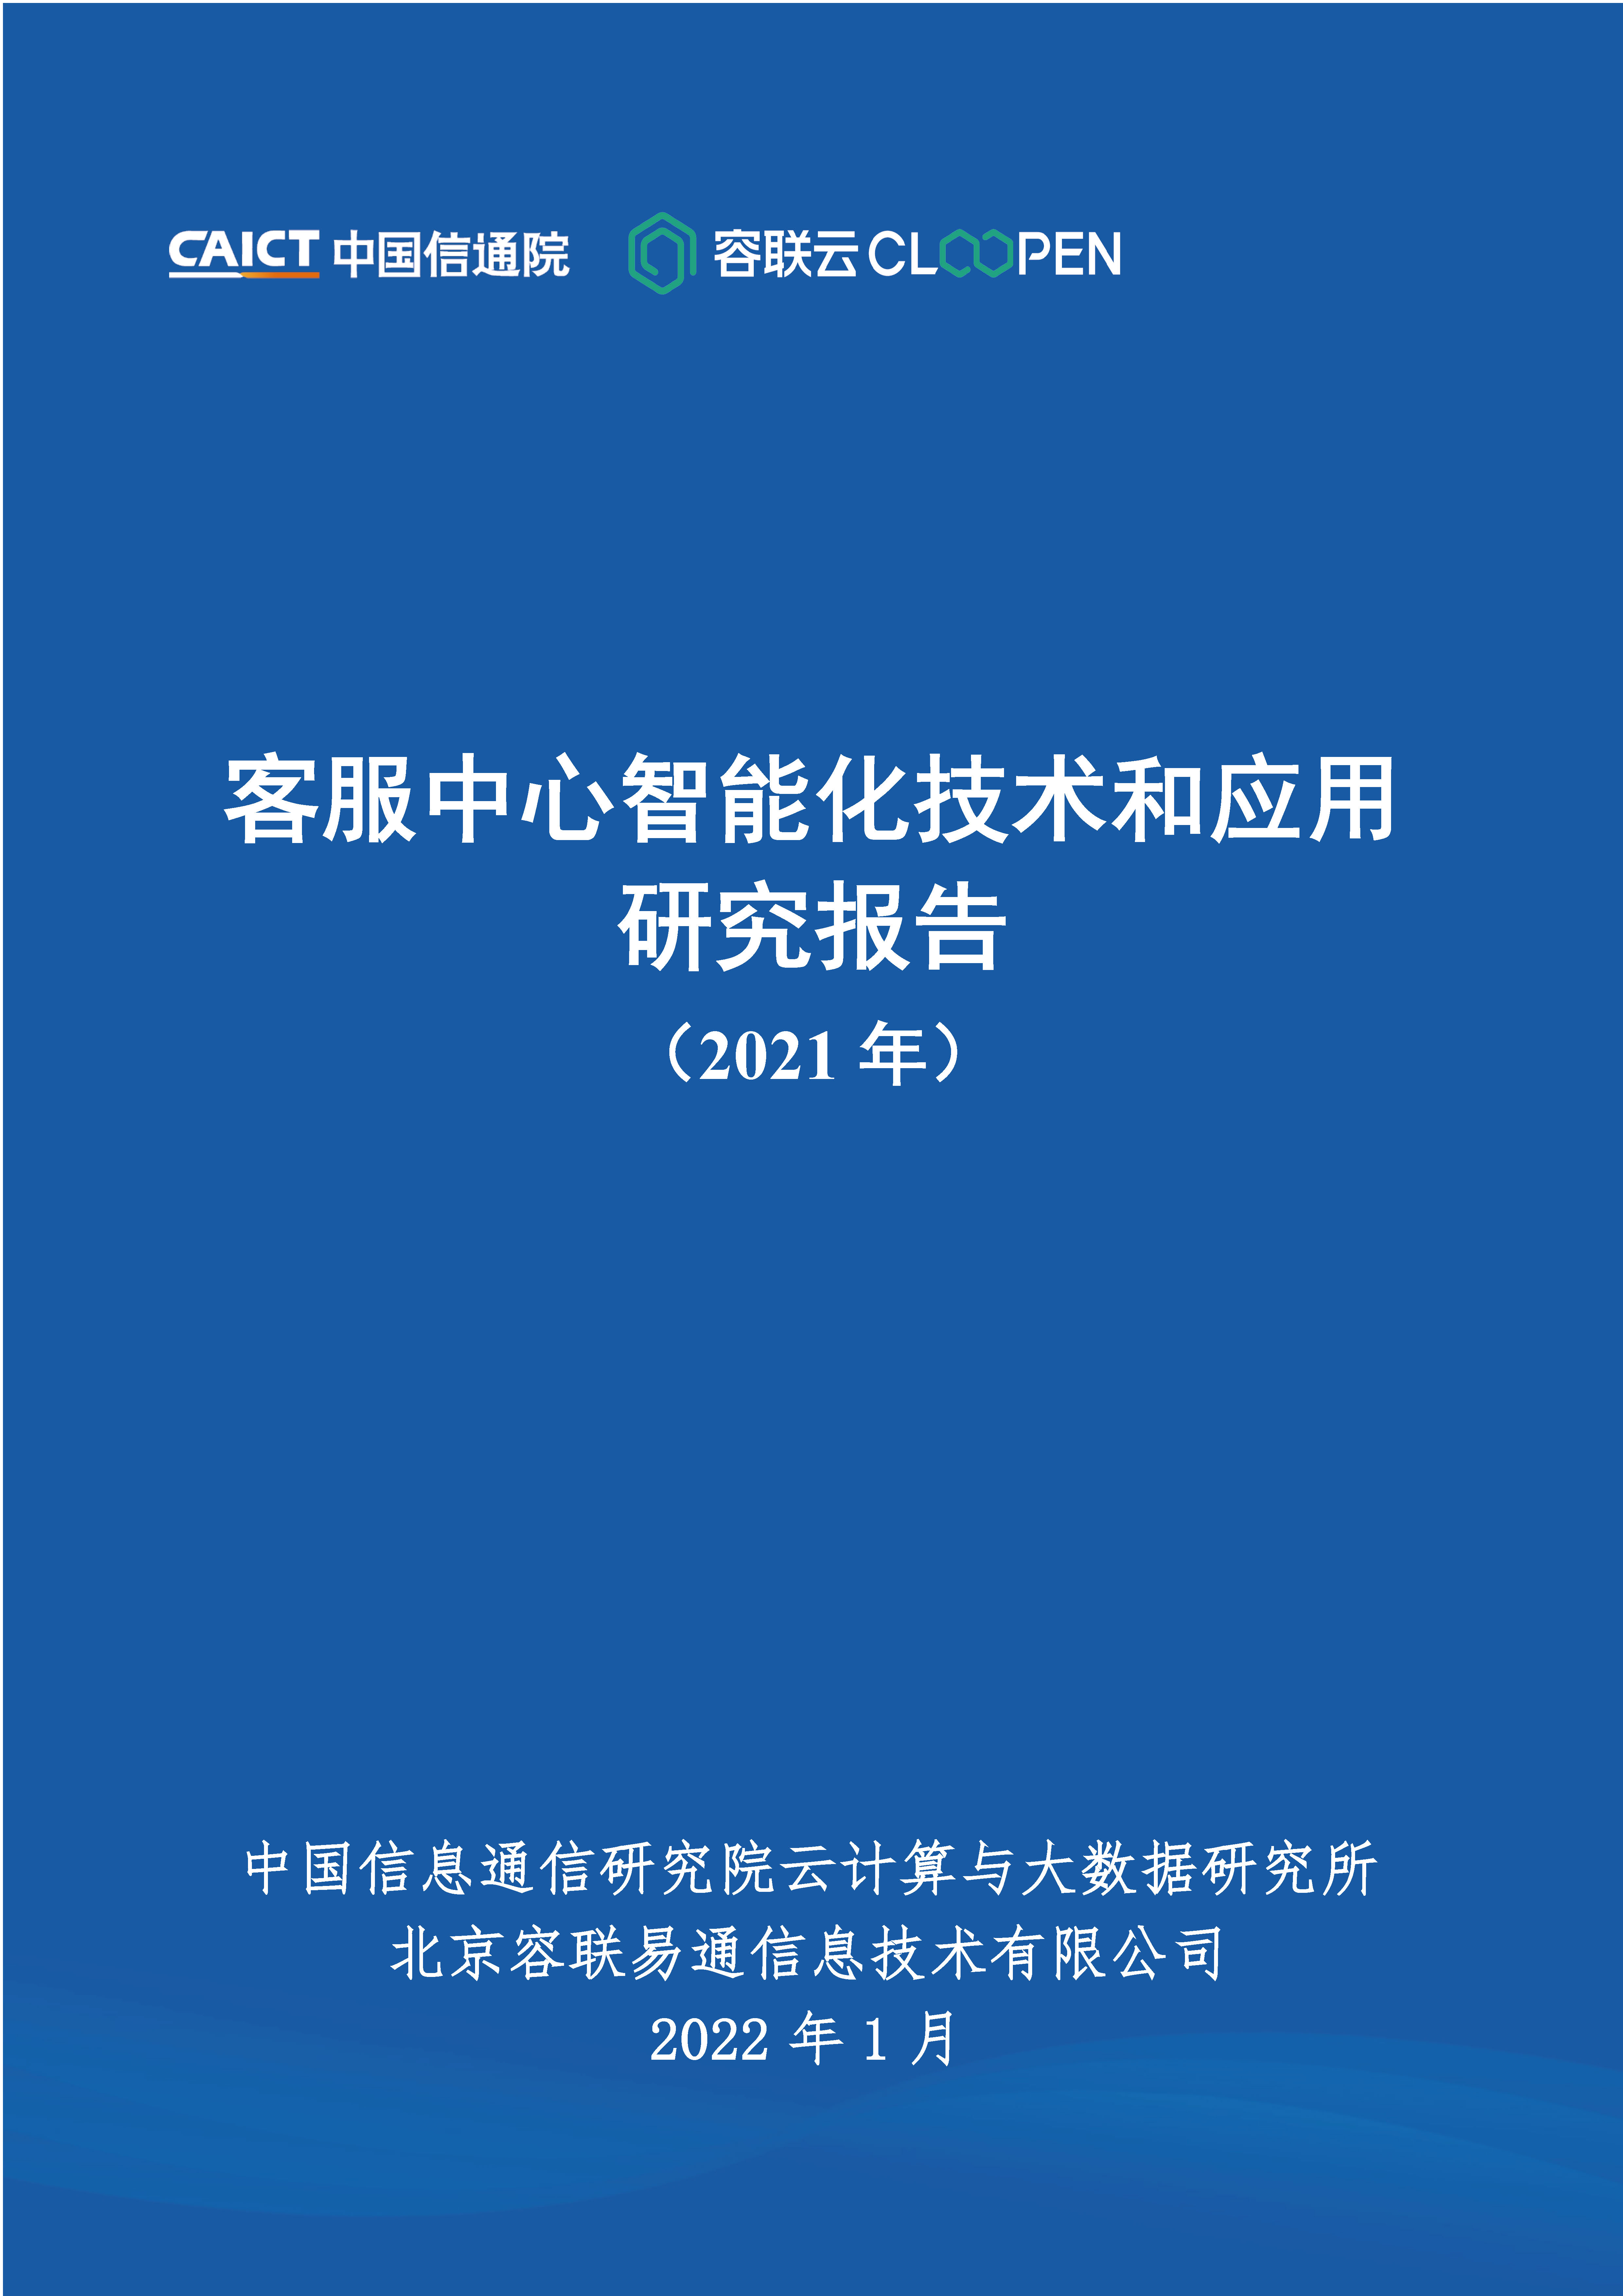 客服中心智能化技术和应用研究报告（2021年）首页.jpg